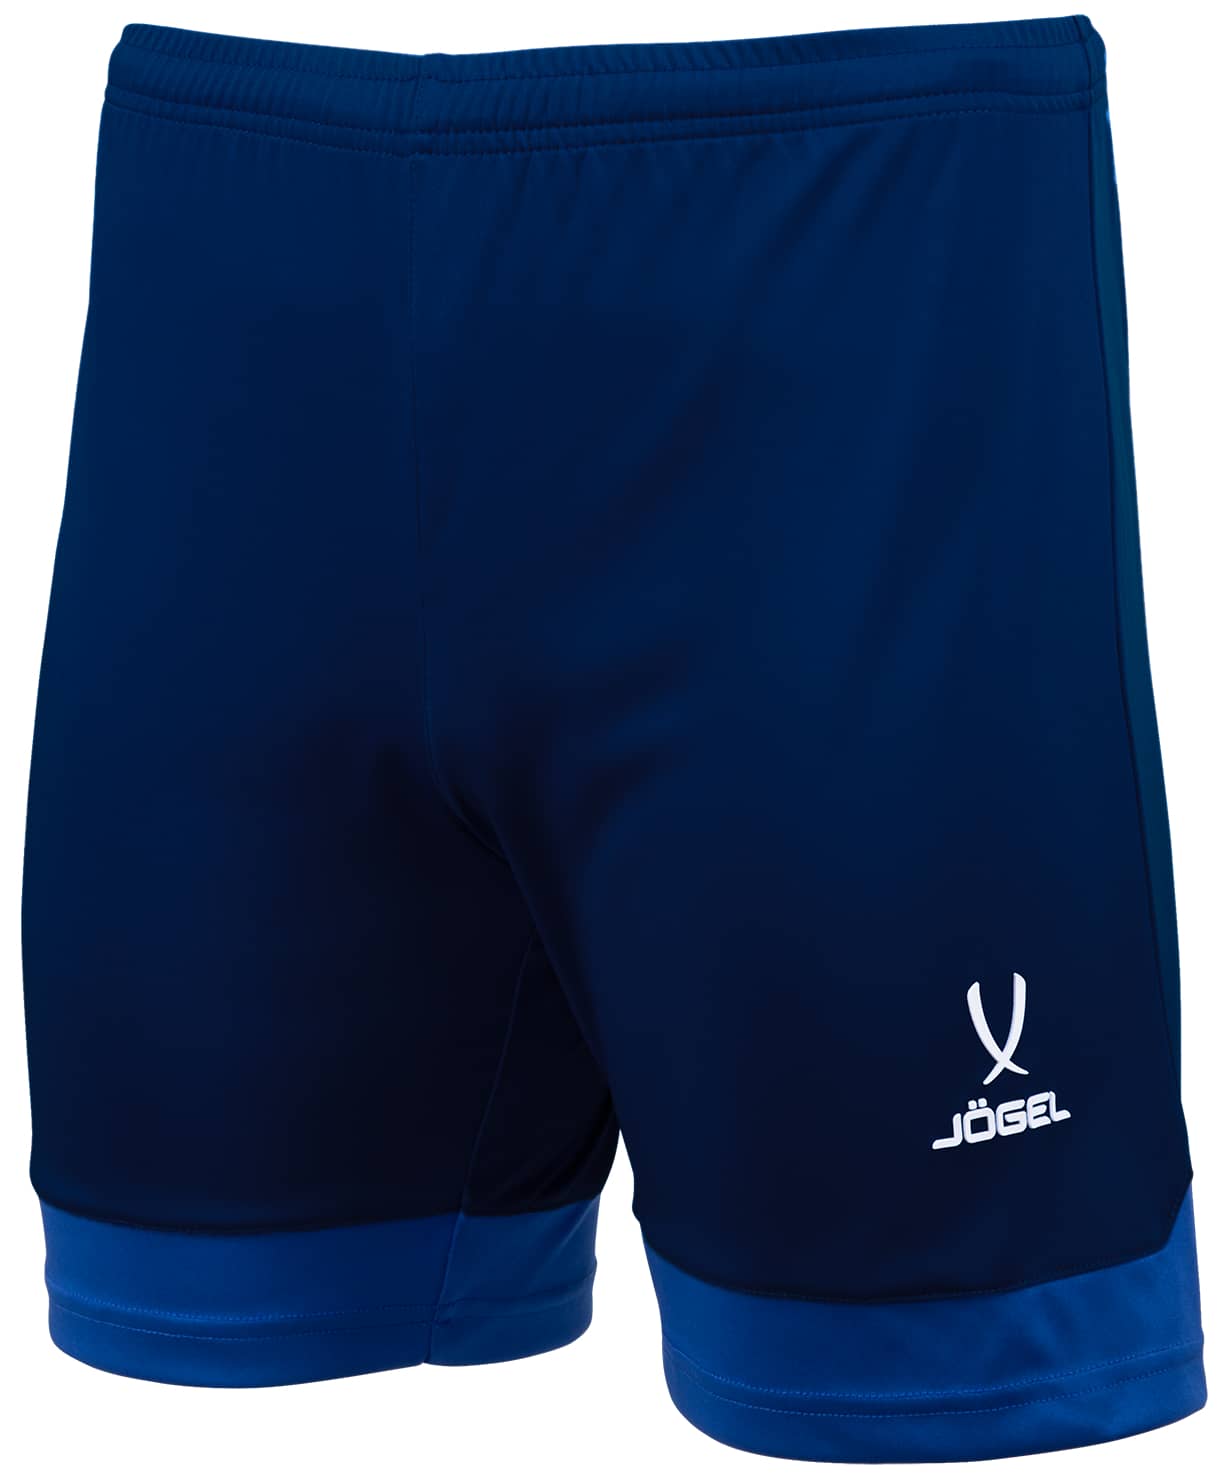 Купить Шорты игровые Jogel DIVISION PerFormDRY Union Shorts, темно-синий/синий/белый, Jögel